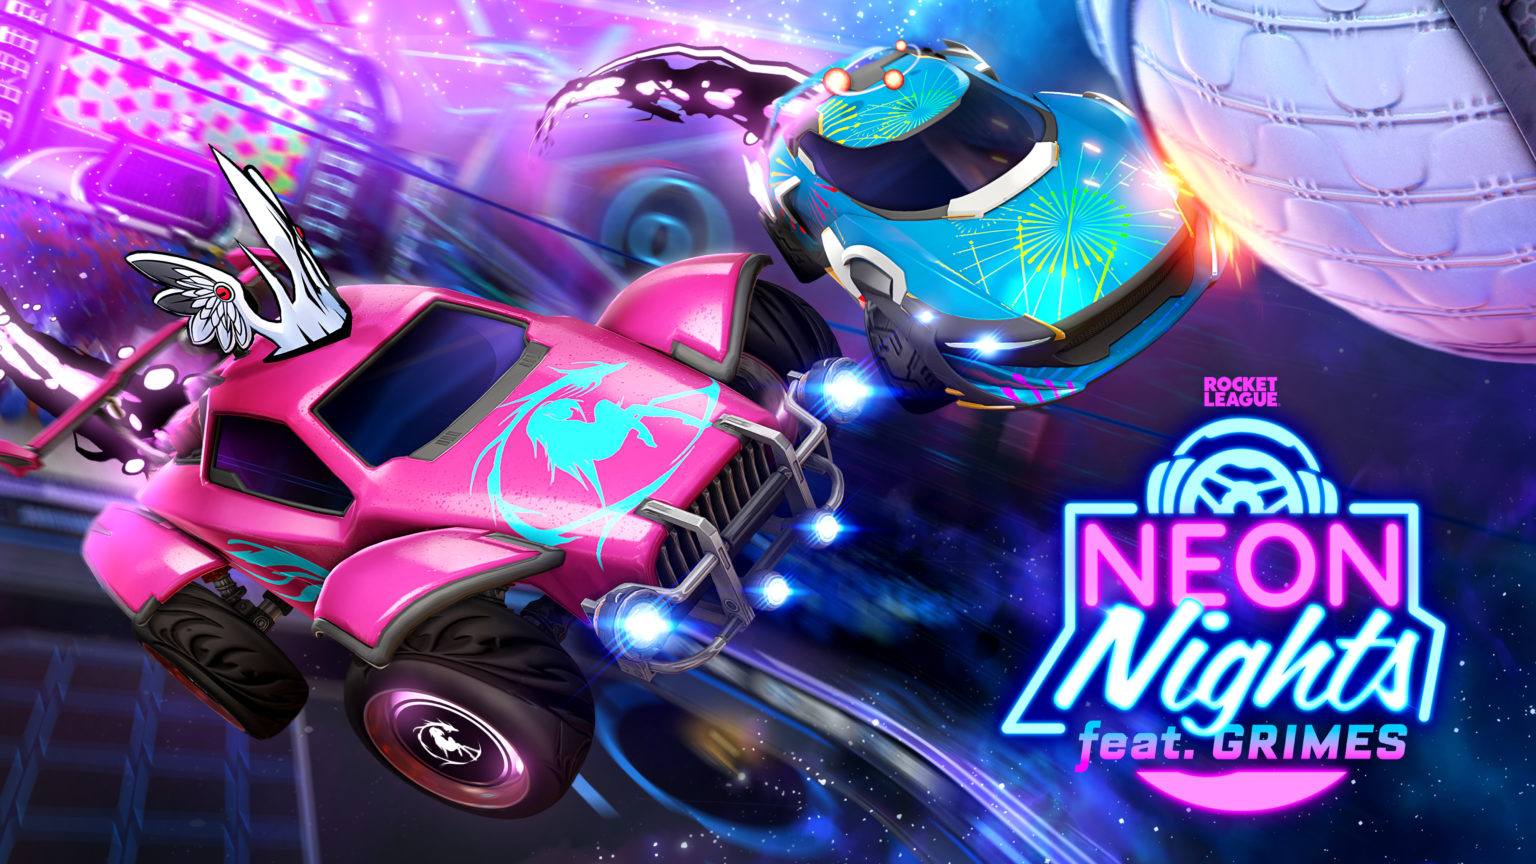 O evento Neon Nights Rocket League também foca na música em parceria com Grimes!